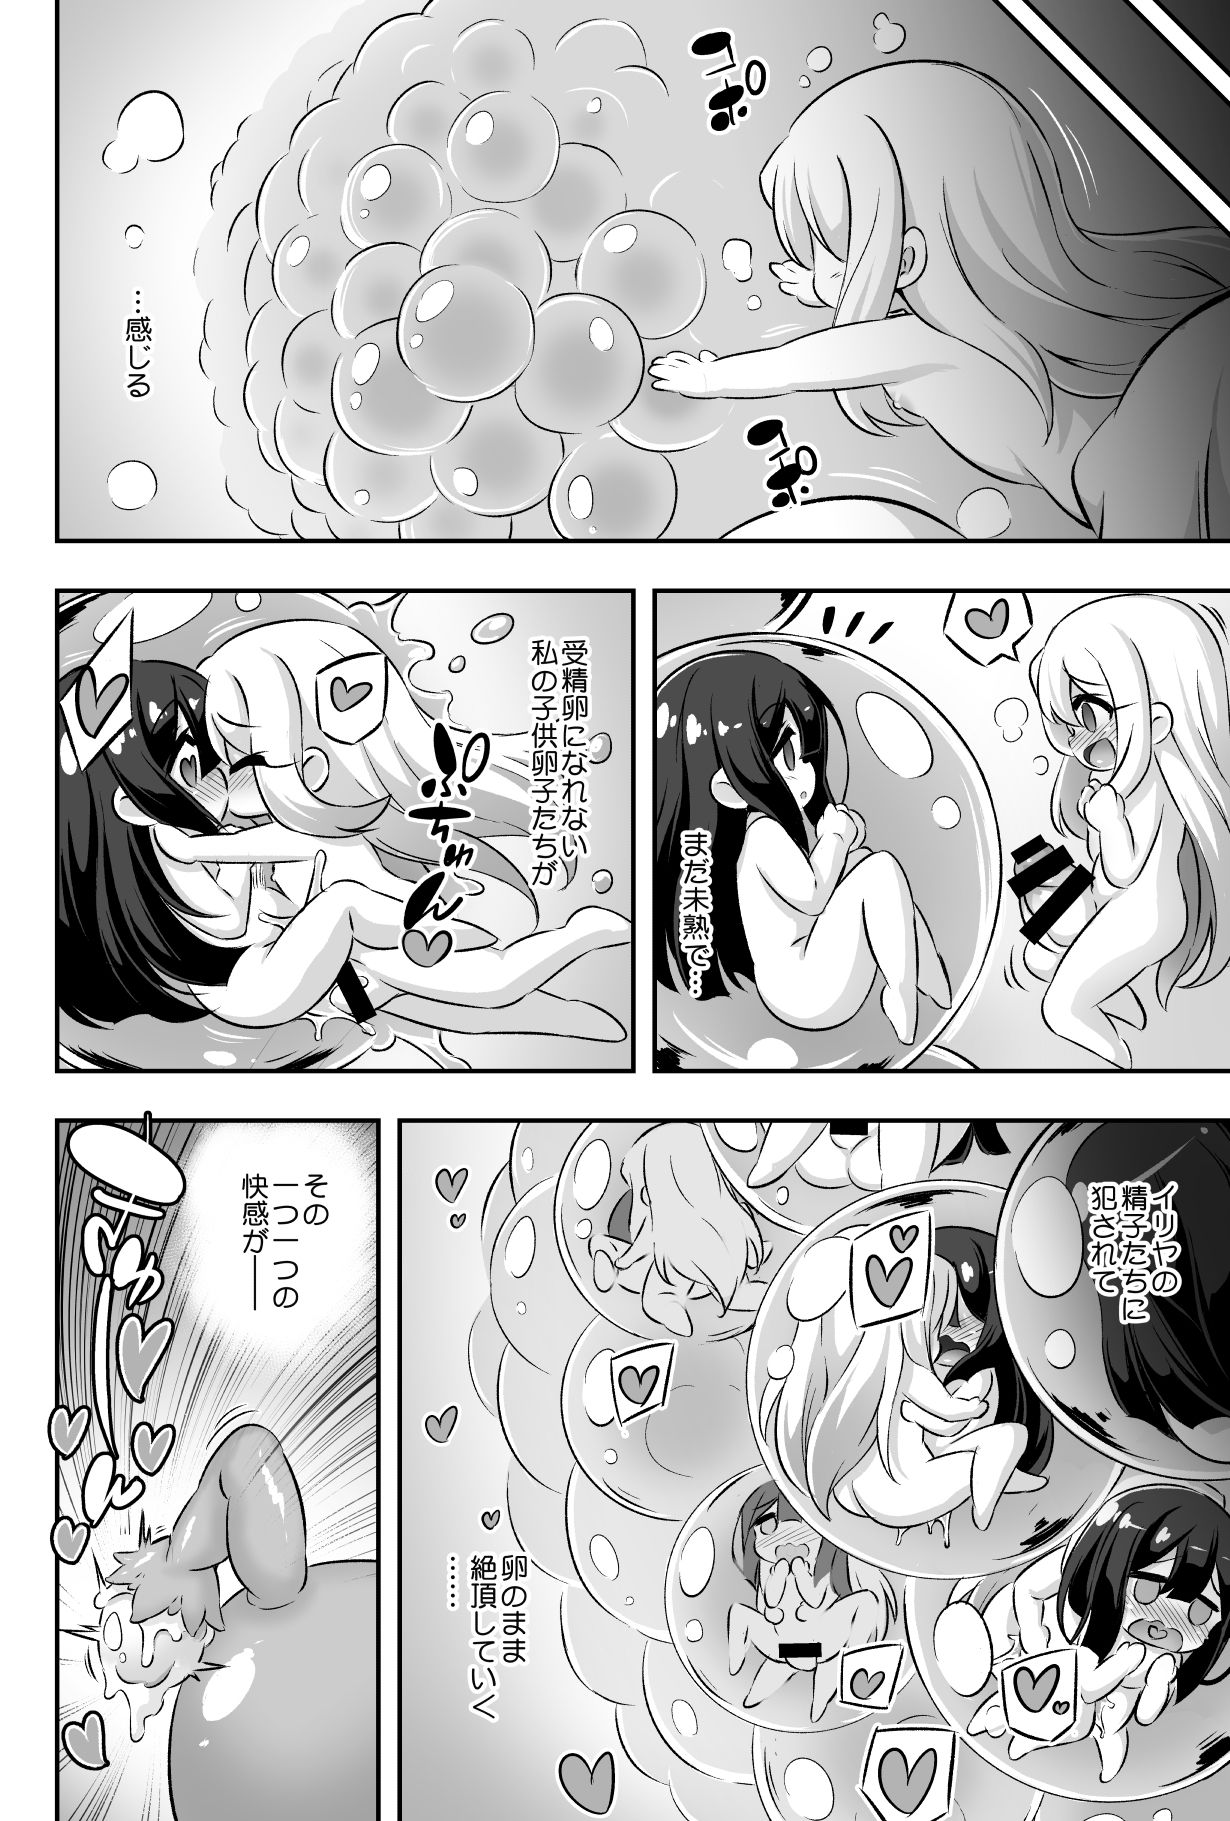 [Achromic (Musouduki)] Loli & Futa Vol. 11 (Fate/kaleid liner Prisma Illya) [Digital] page 27 full